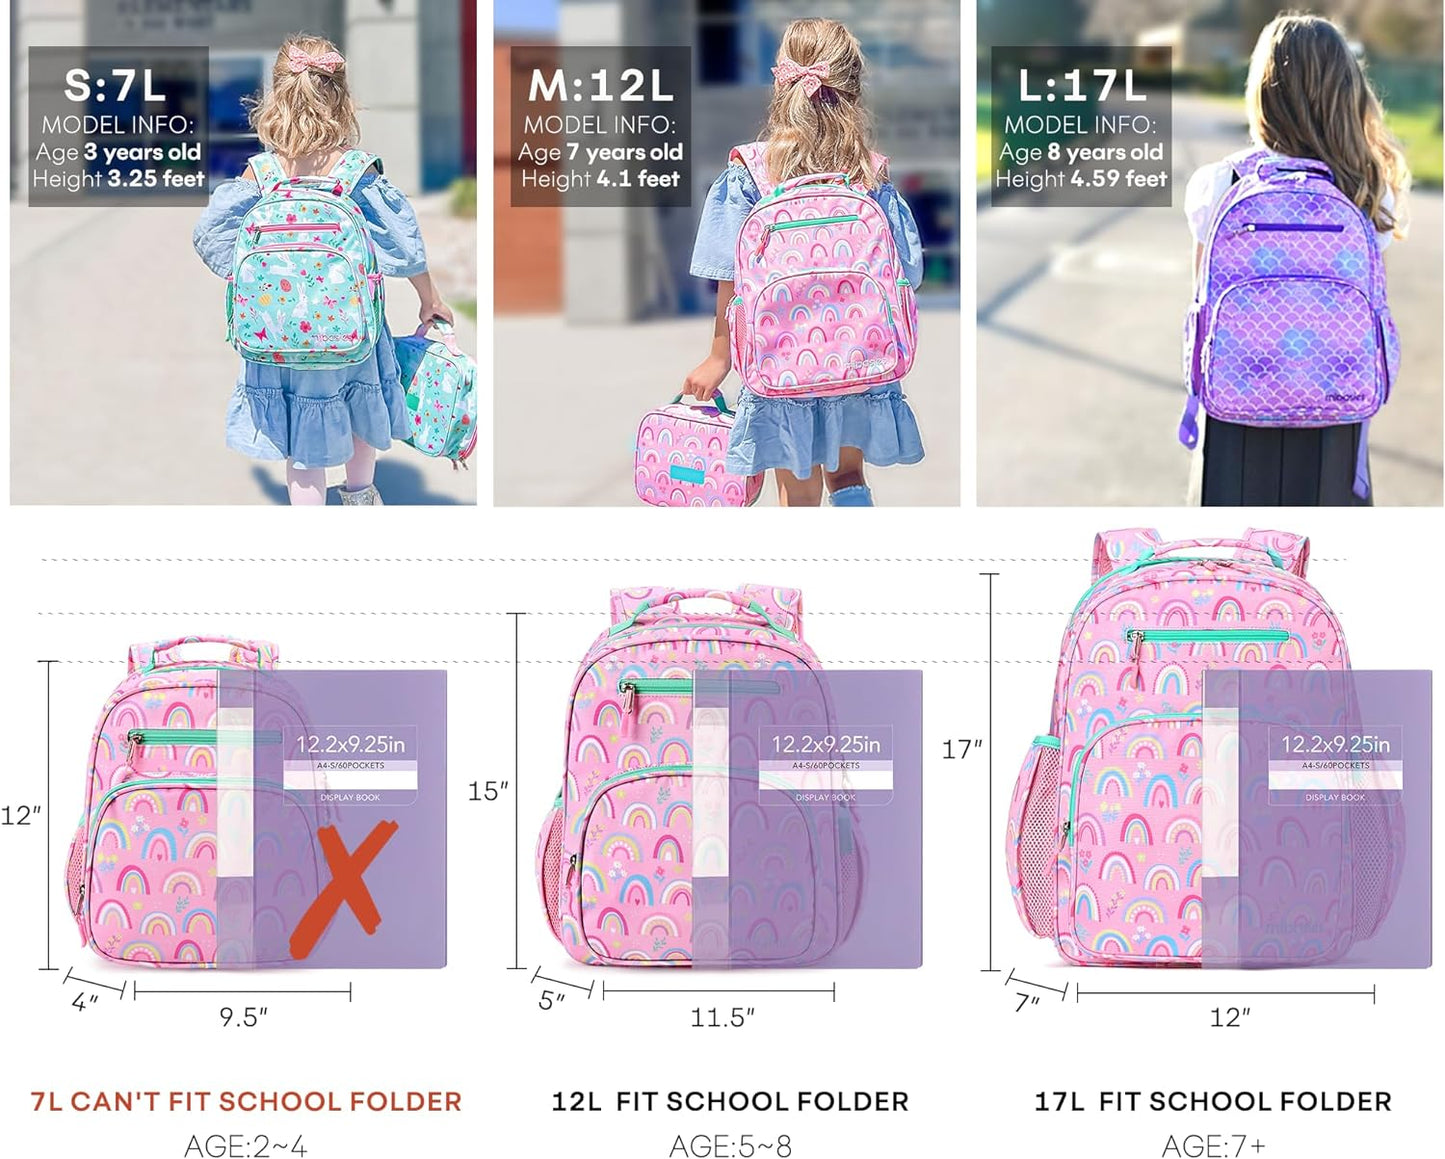 Boys Backpack for Elementary School, Backpack for Boys 5-8, Lightweight Kids Backpacks for Boys（Galaxy Dinosaur）